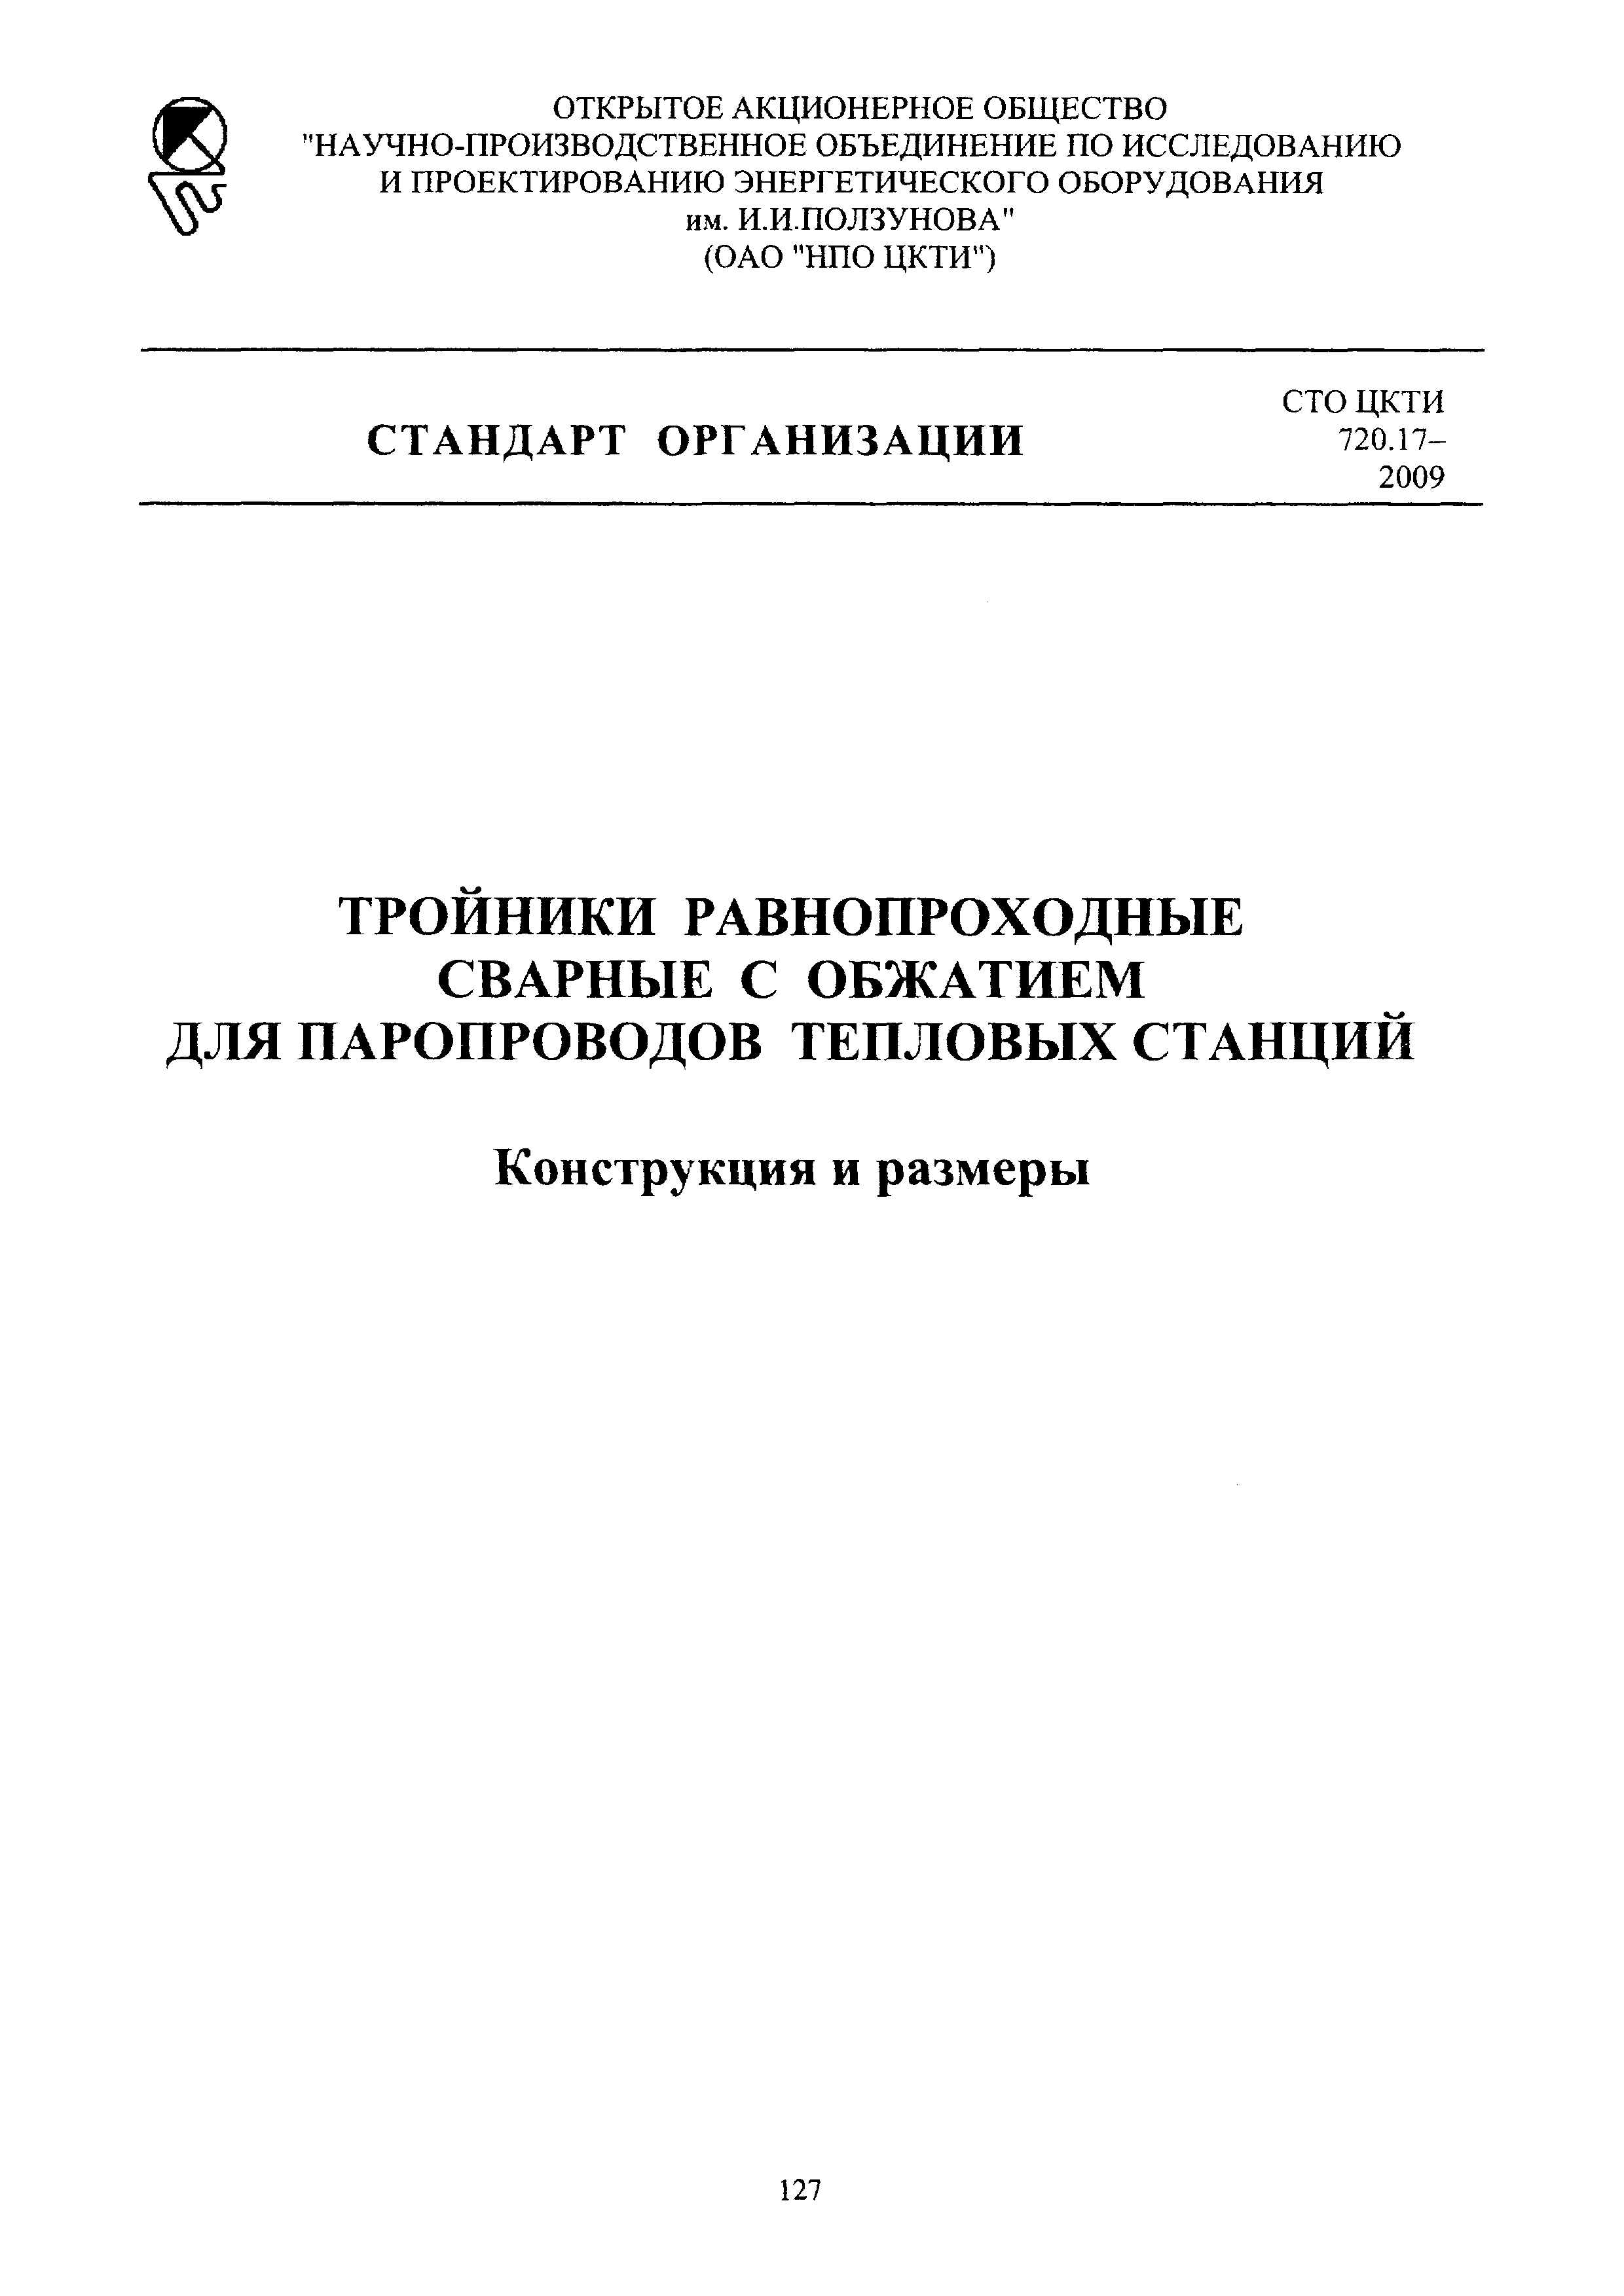 СТО ЦКТИ 720.17-2009